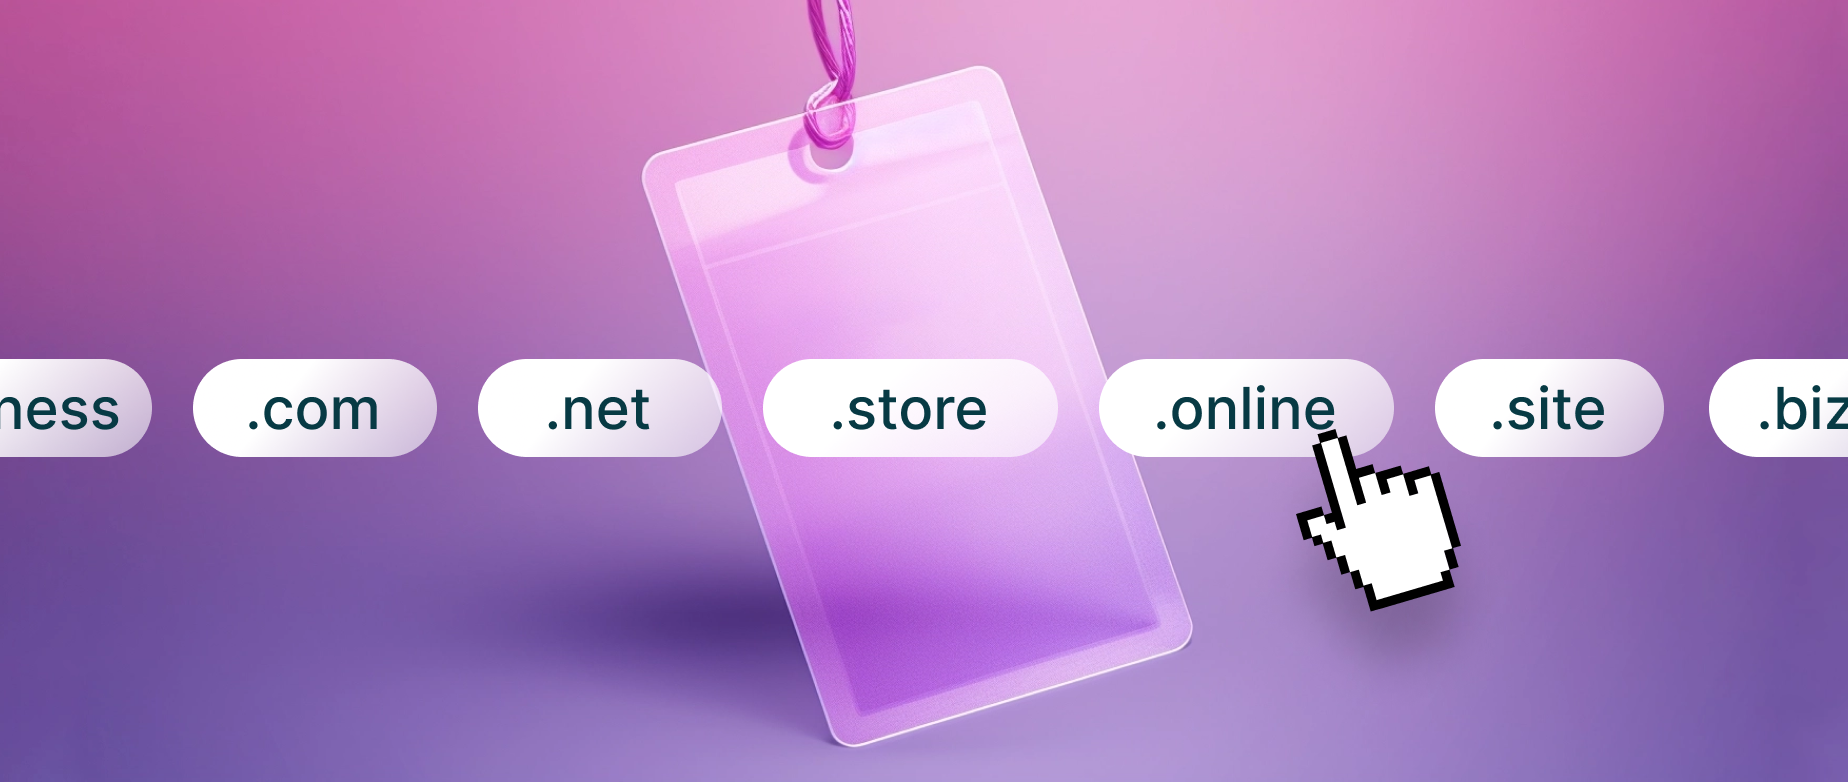 Uma etiqueta de preço está pendurada atrás de extensões de domínio populares, representando a ideia de preços de domínio.